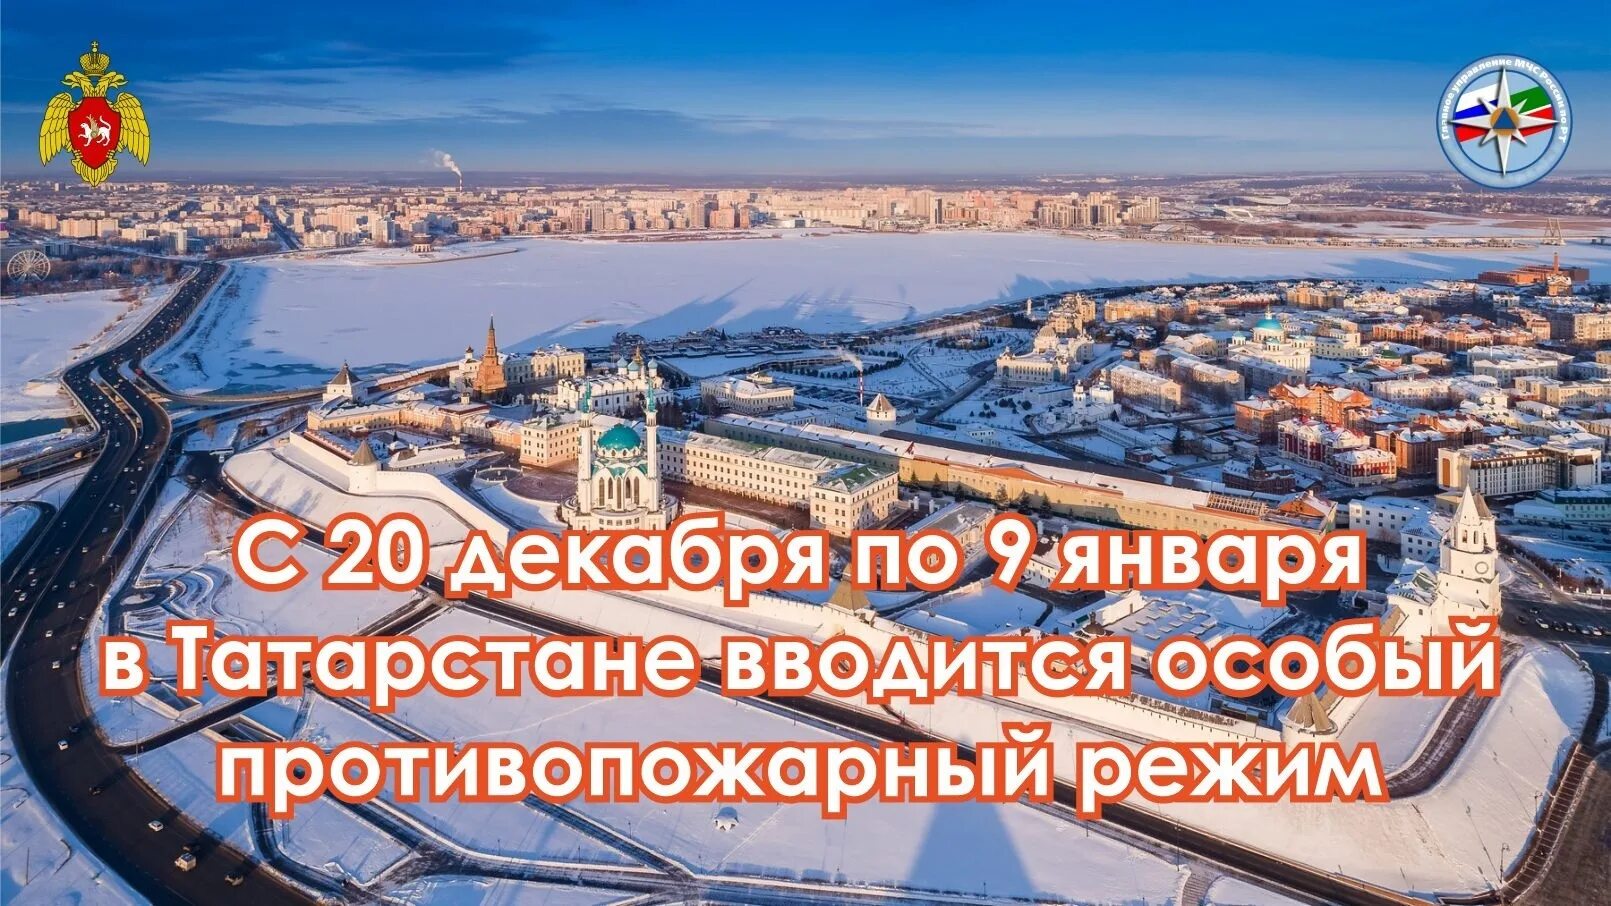 В Татарстане с 19 декабря вводится особый противопожарный режим. 20 декабря 2020 г